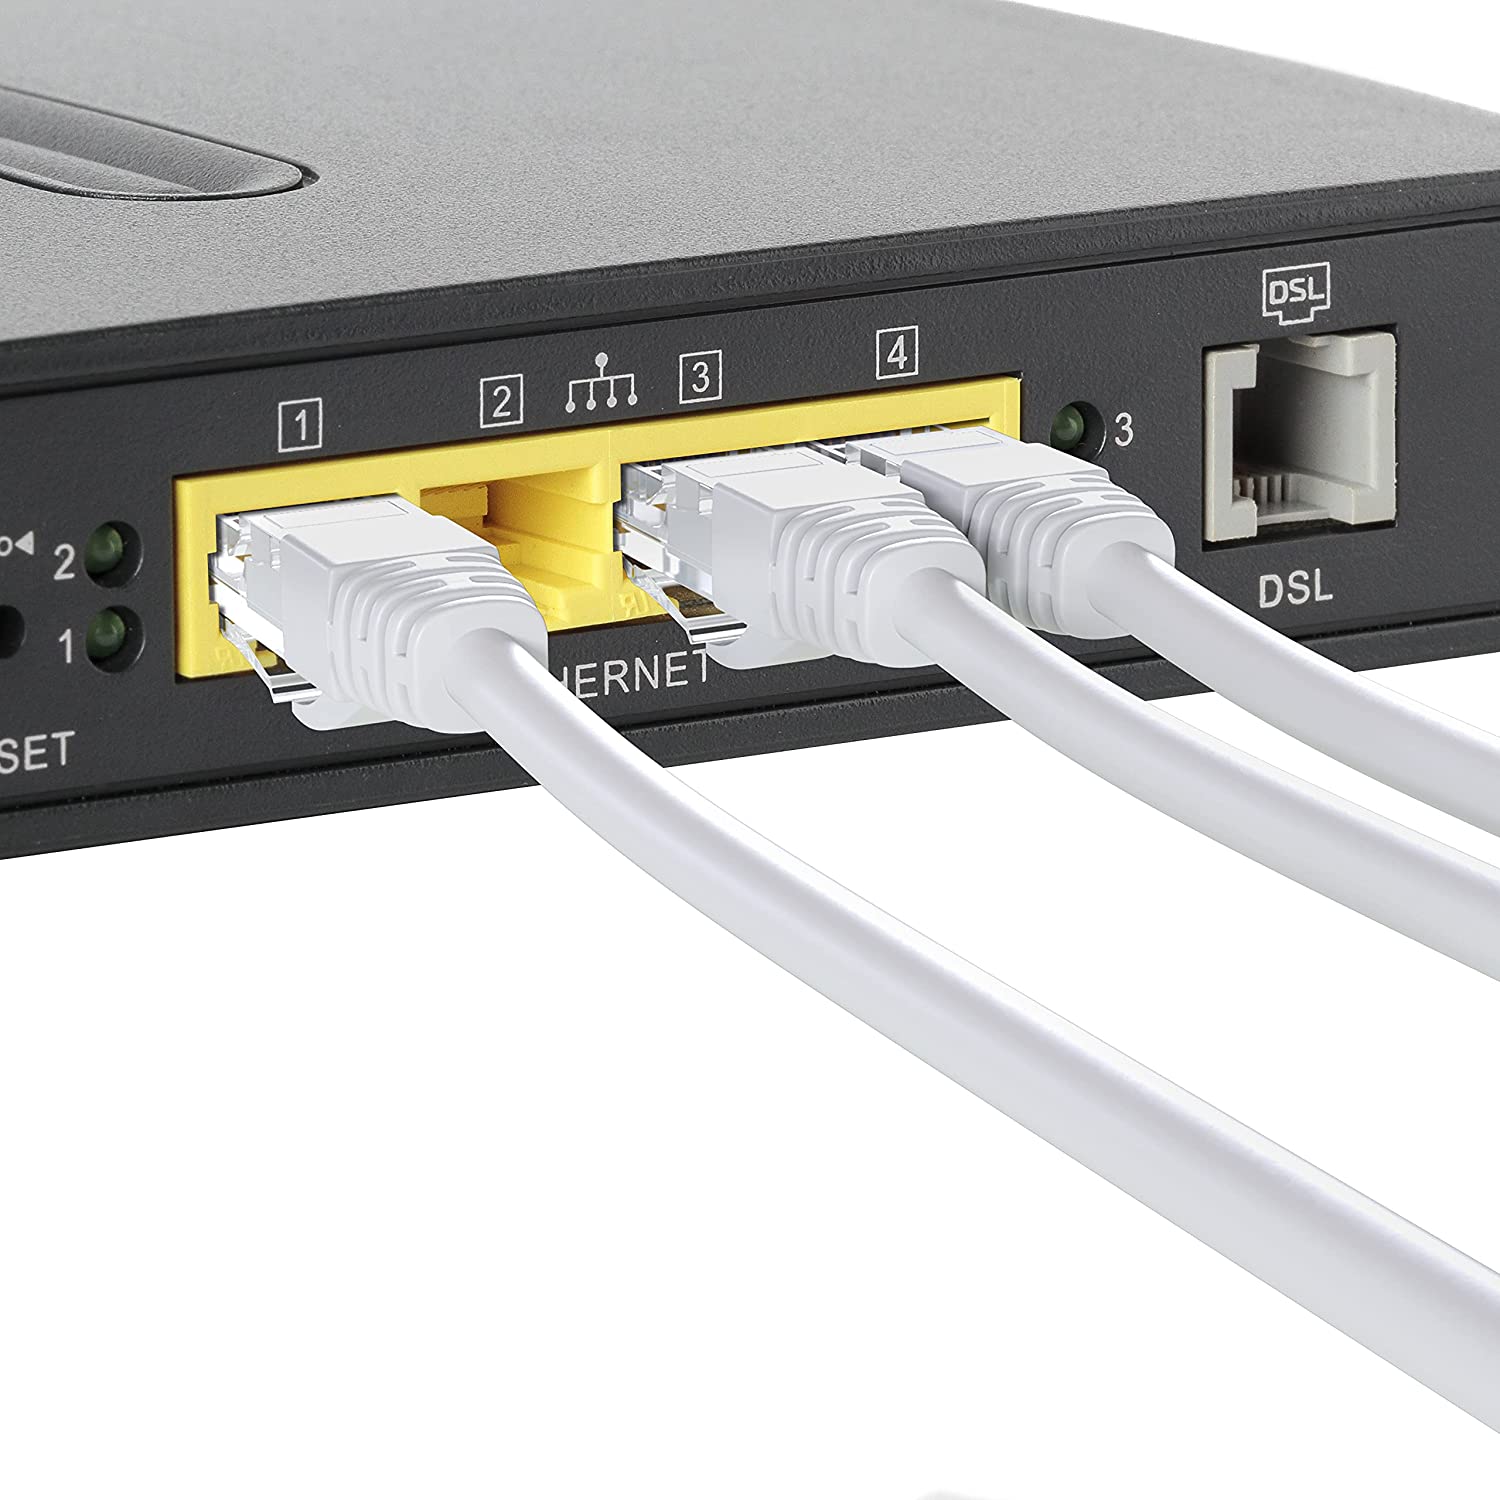 Elfcam® - 35m Cable Reseau Ethernet RJ45 Cat 7, Paire Torsadee